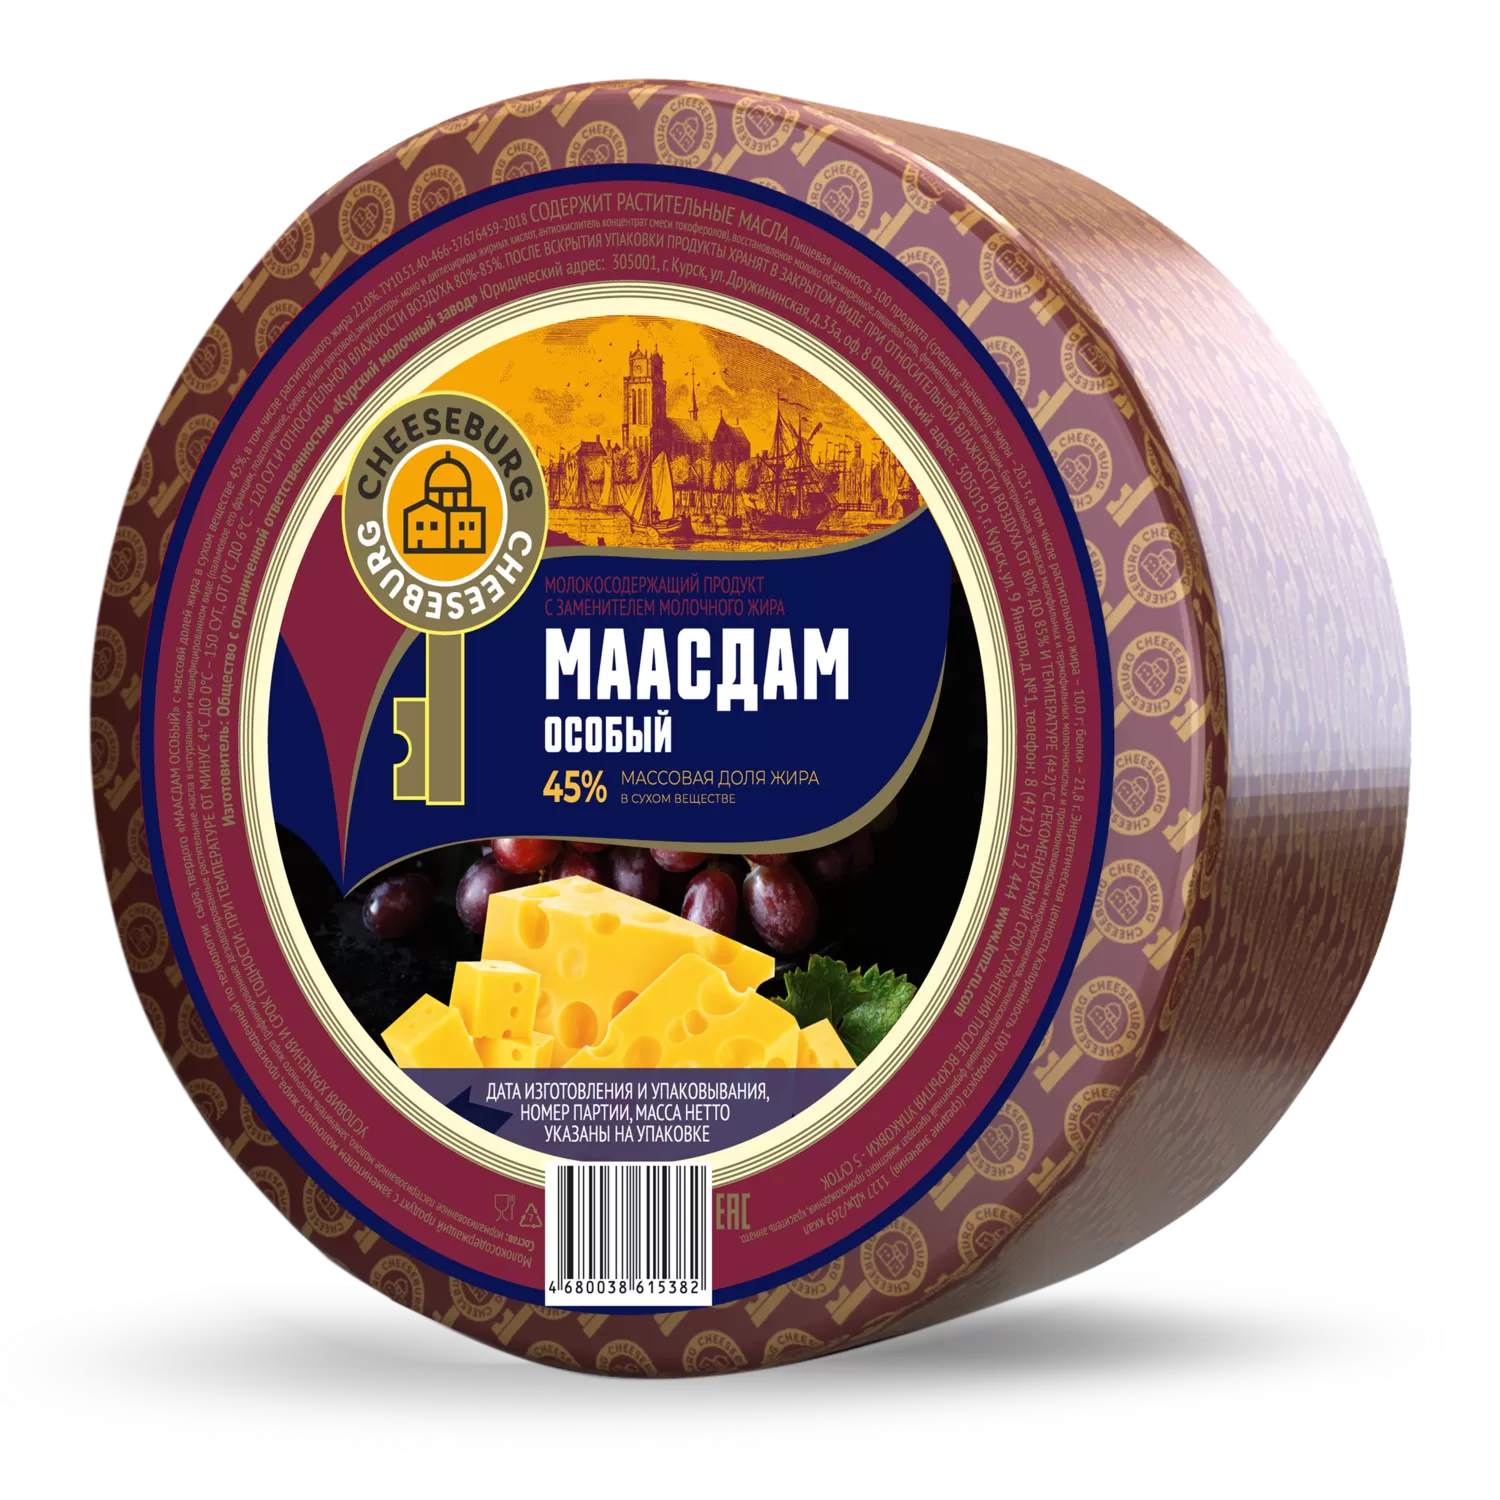 сырный продукт CHEESEBURG курск маасдам особый купить в москве оптом